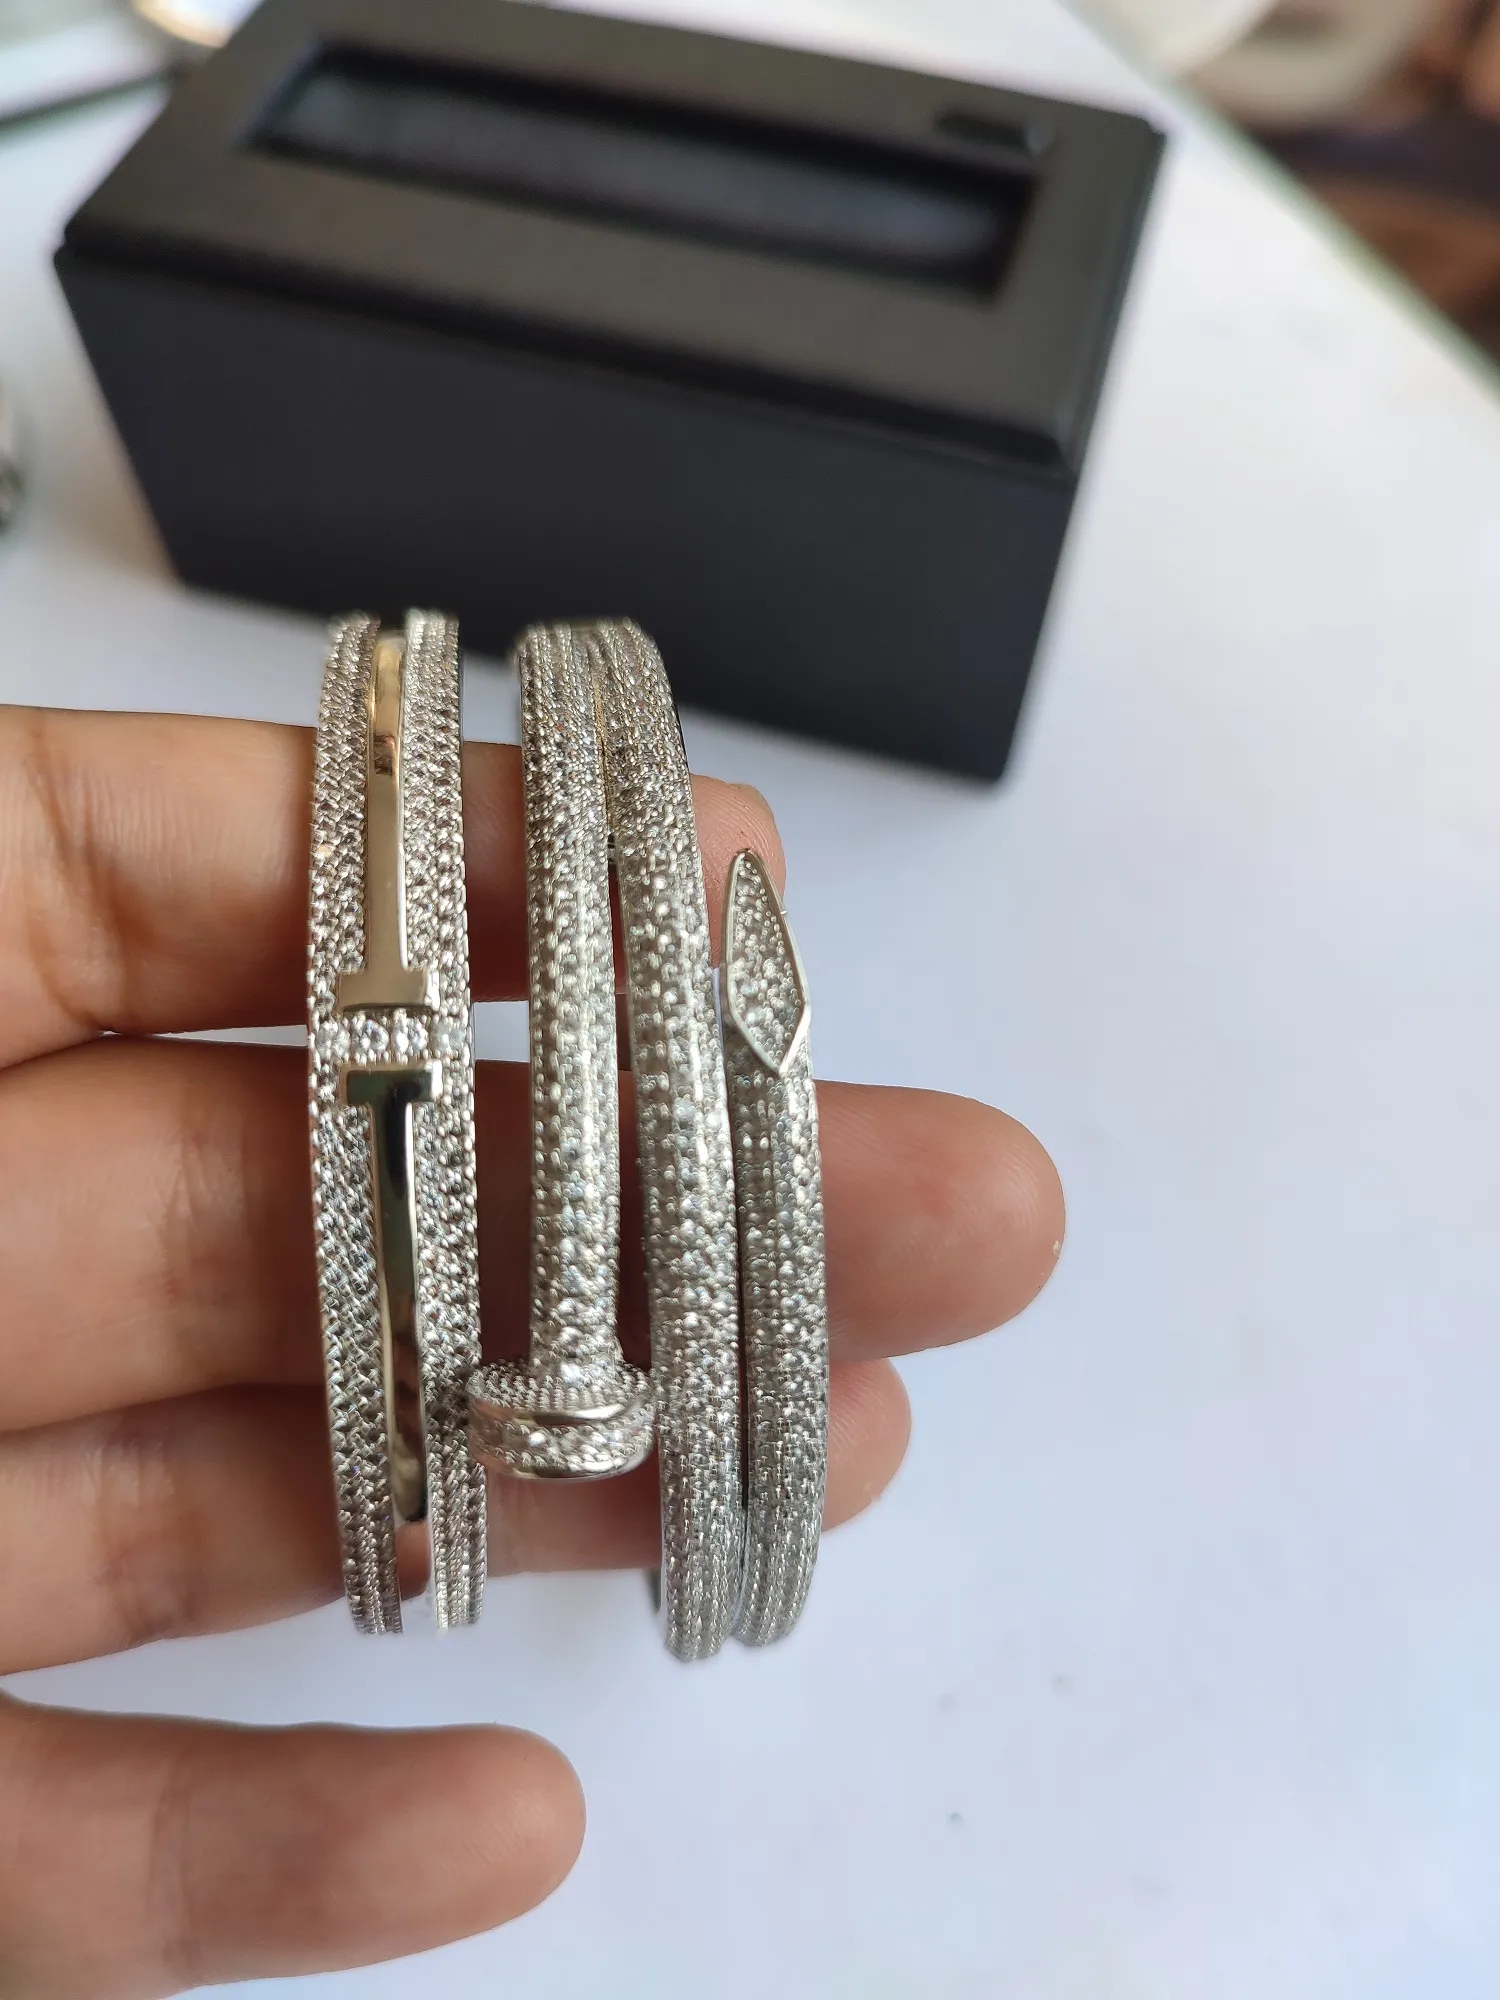 Diseñador de plata brazalete de oro macizo Pulsera de lujo Perforación completa Marca de lujo Moda Joyería de diamantes clásica para hombres Mujeres Fiesta Accesorios de boda regalo elegante